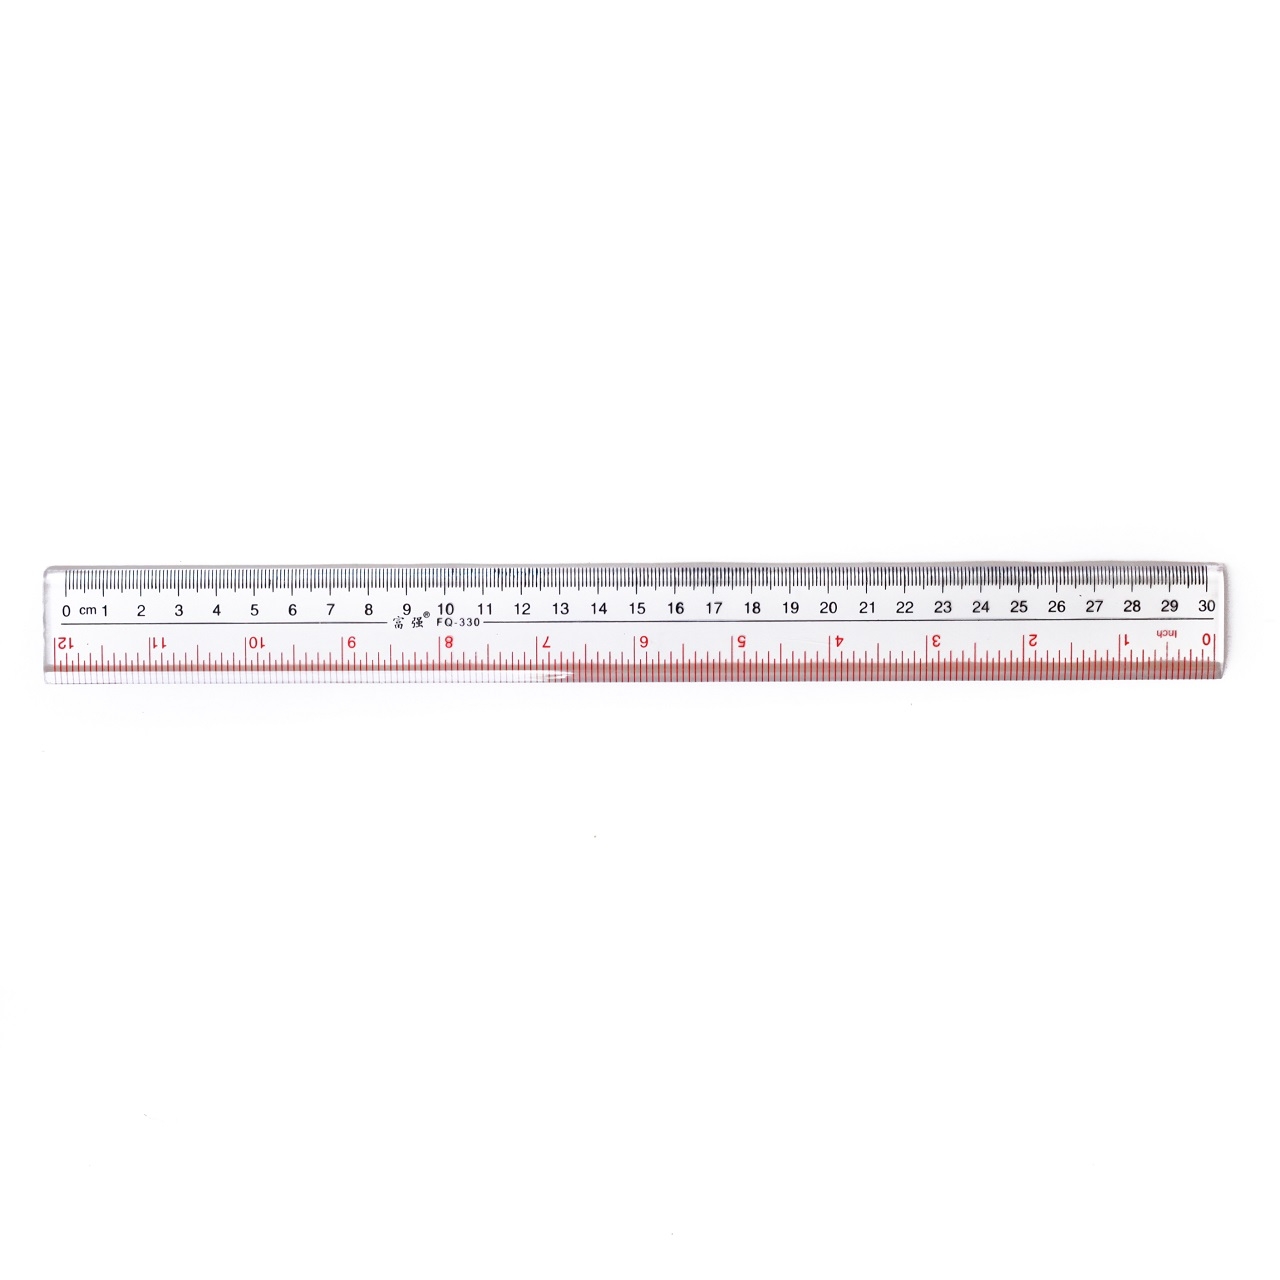 8 inch rulers